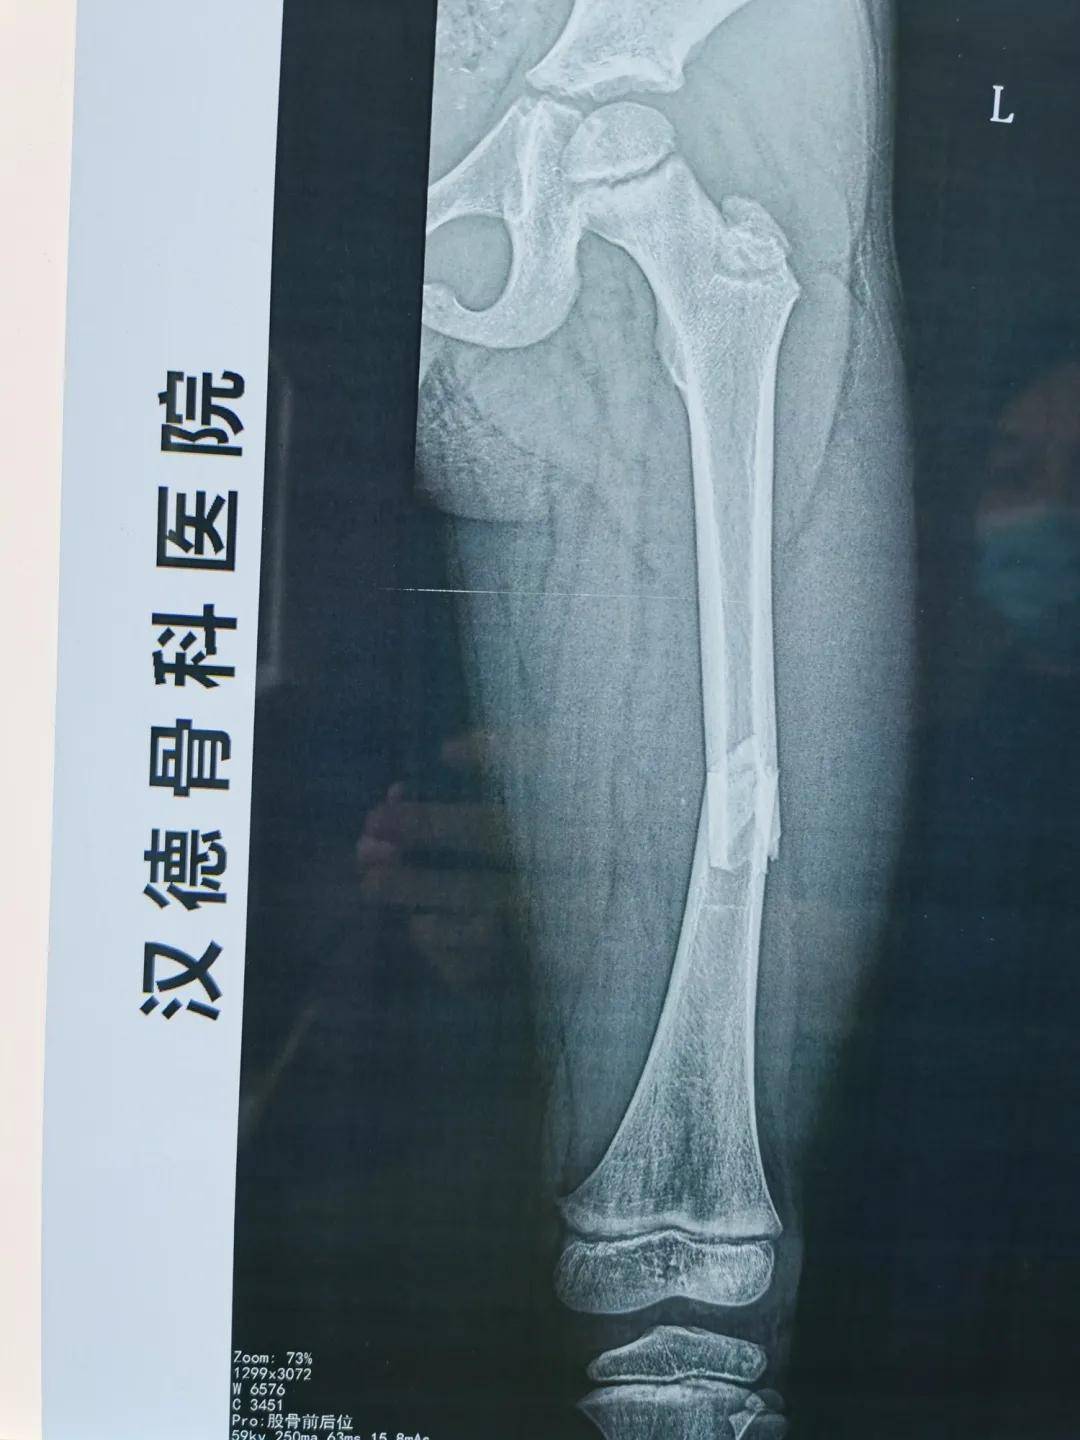 弹性髓内针 手术前,x光影像中明显的大腿的骨折 手术中的c形臂透视